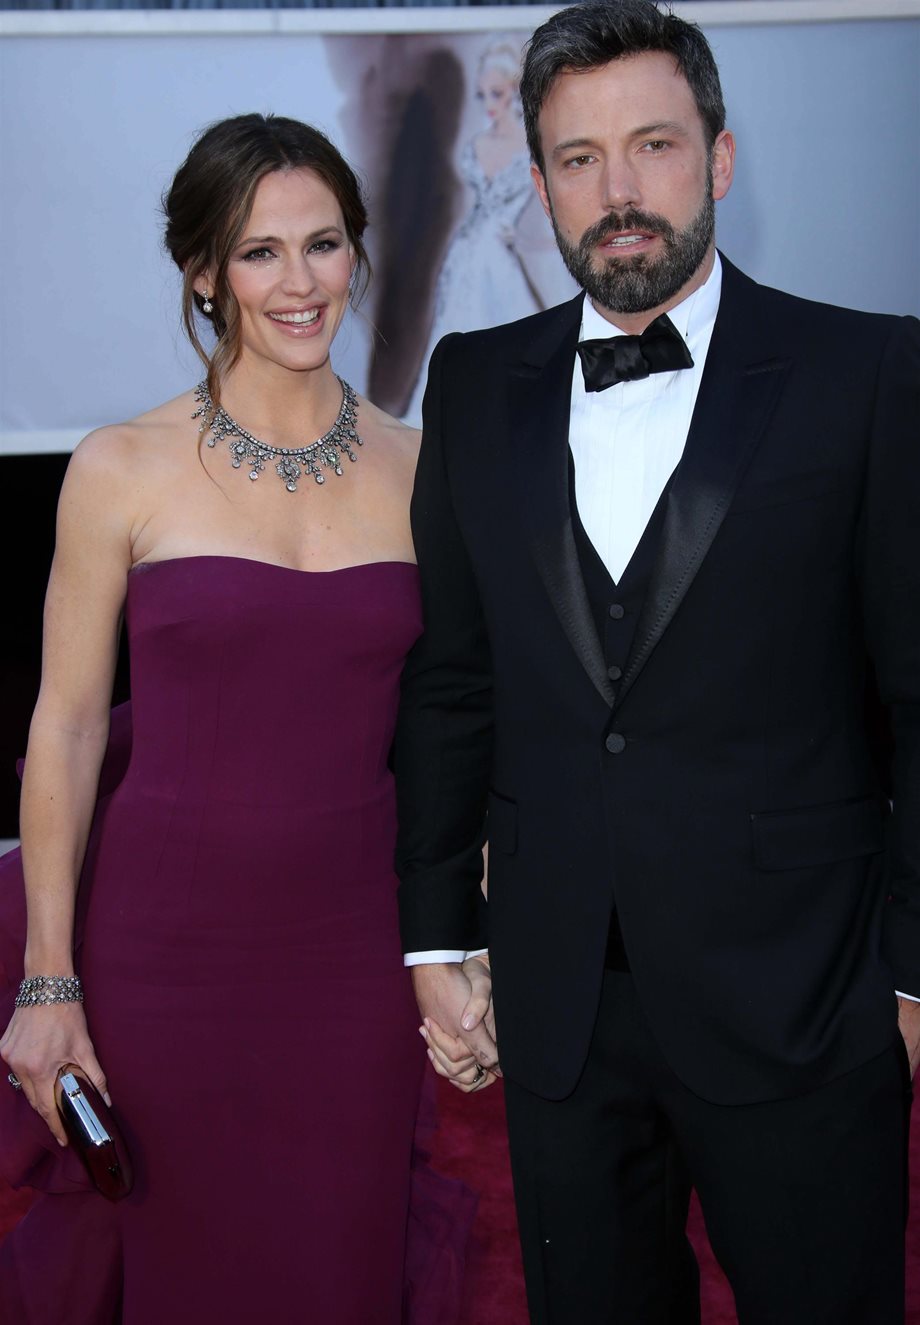 Το διαζύγιο του διάσημου ζευγαριού ακυρώνεται: Η ηθοποιός σύζυγός του είναι ξανά έγκυος!